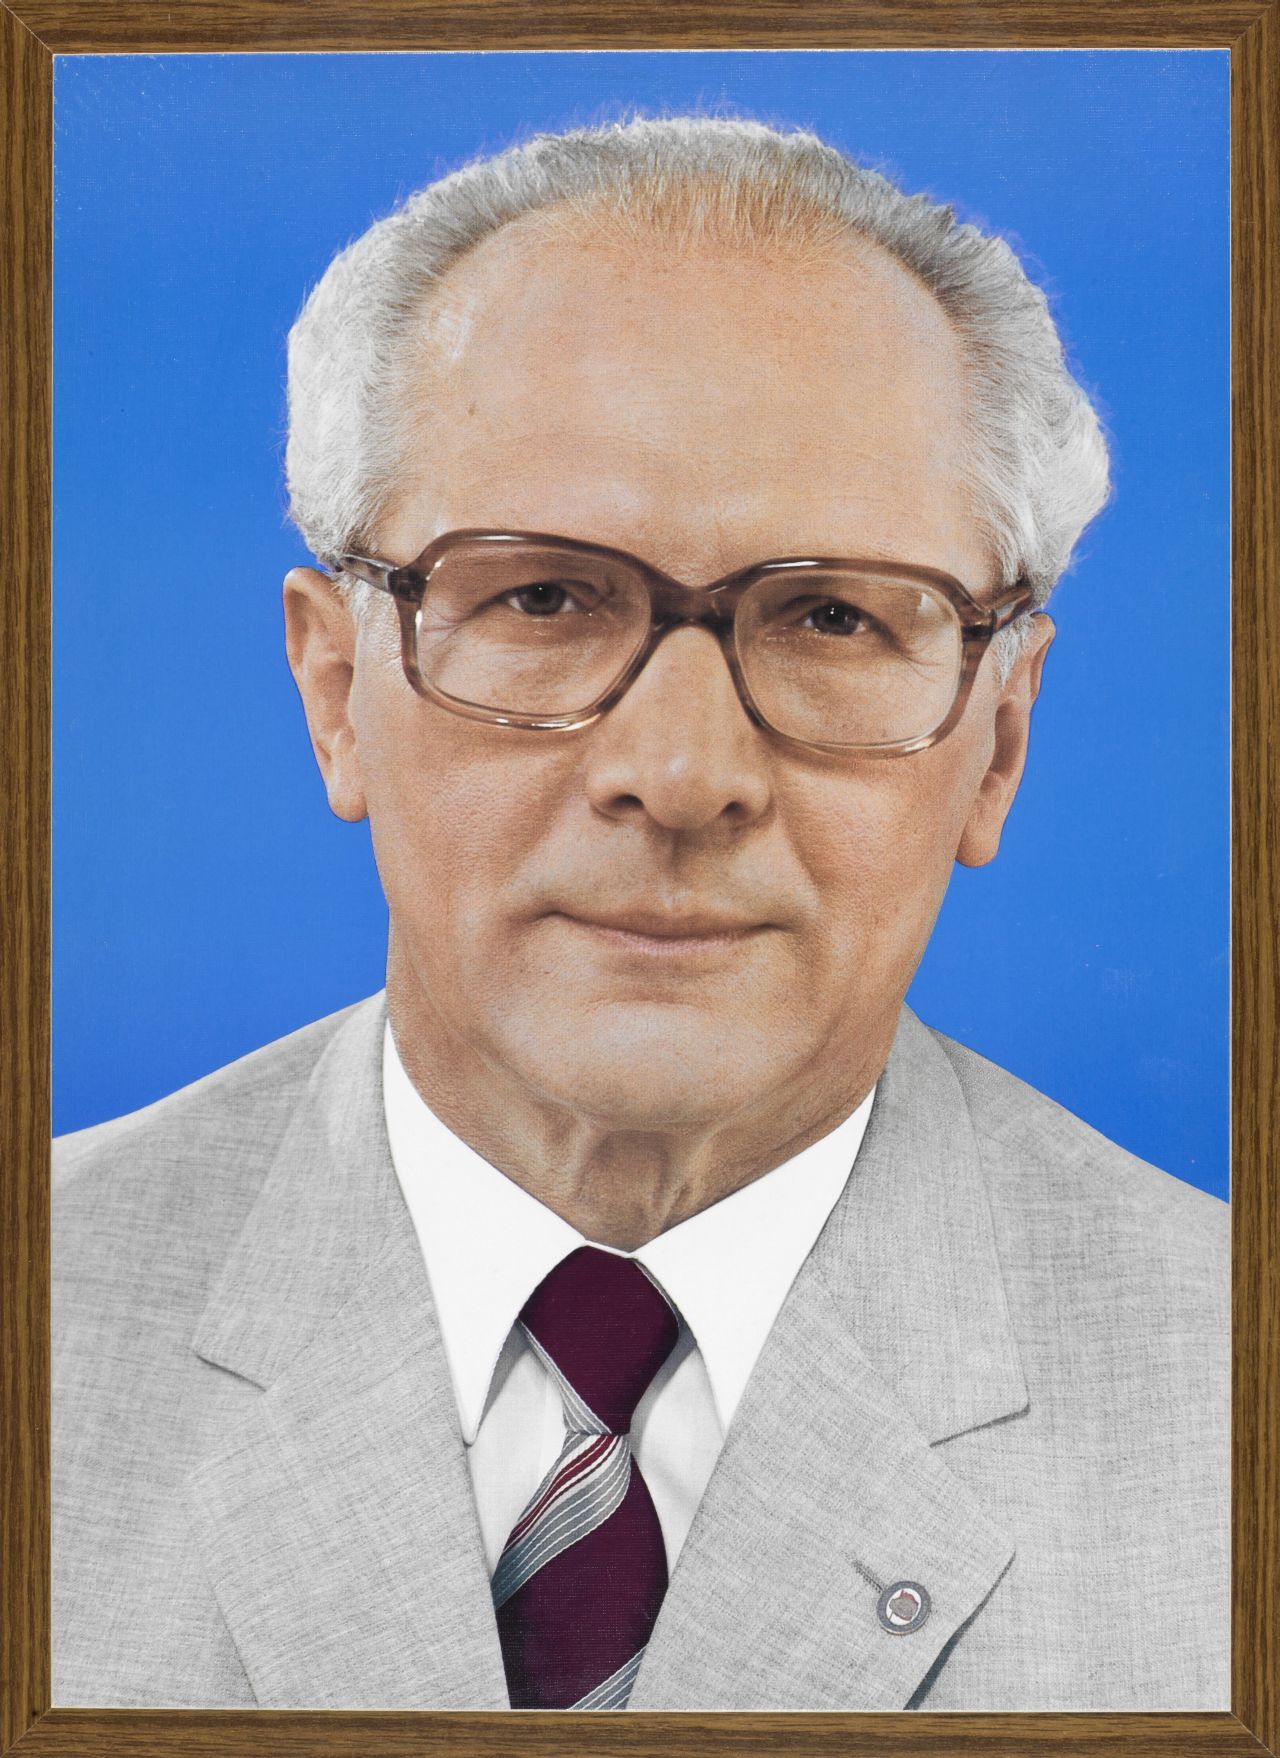 Ein Viertelporträt von Erich Honecker im hellgrauen Jacket mit SED-Anstecknadel, weißem Hemd und rot-grauer Krawatte. Er trägt eine Hornbrille.